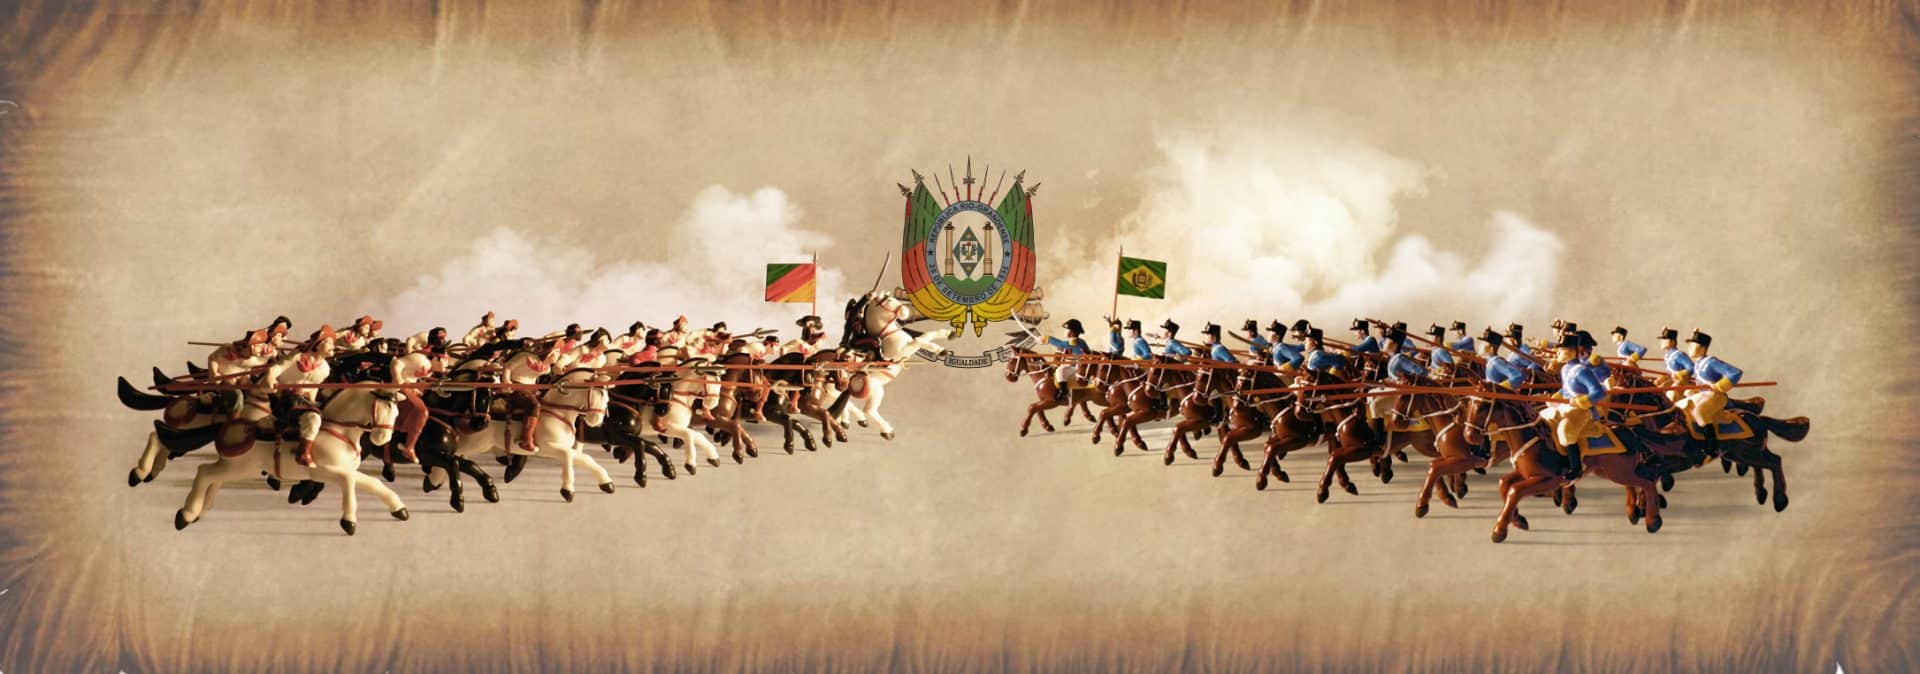 Guerras no Brasil - períodos, motivações e conflitos